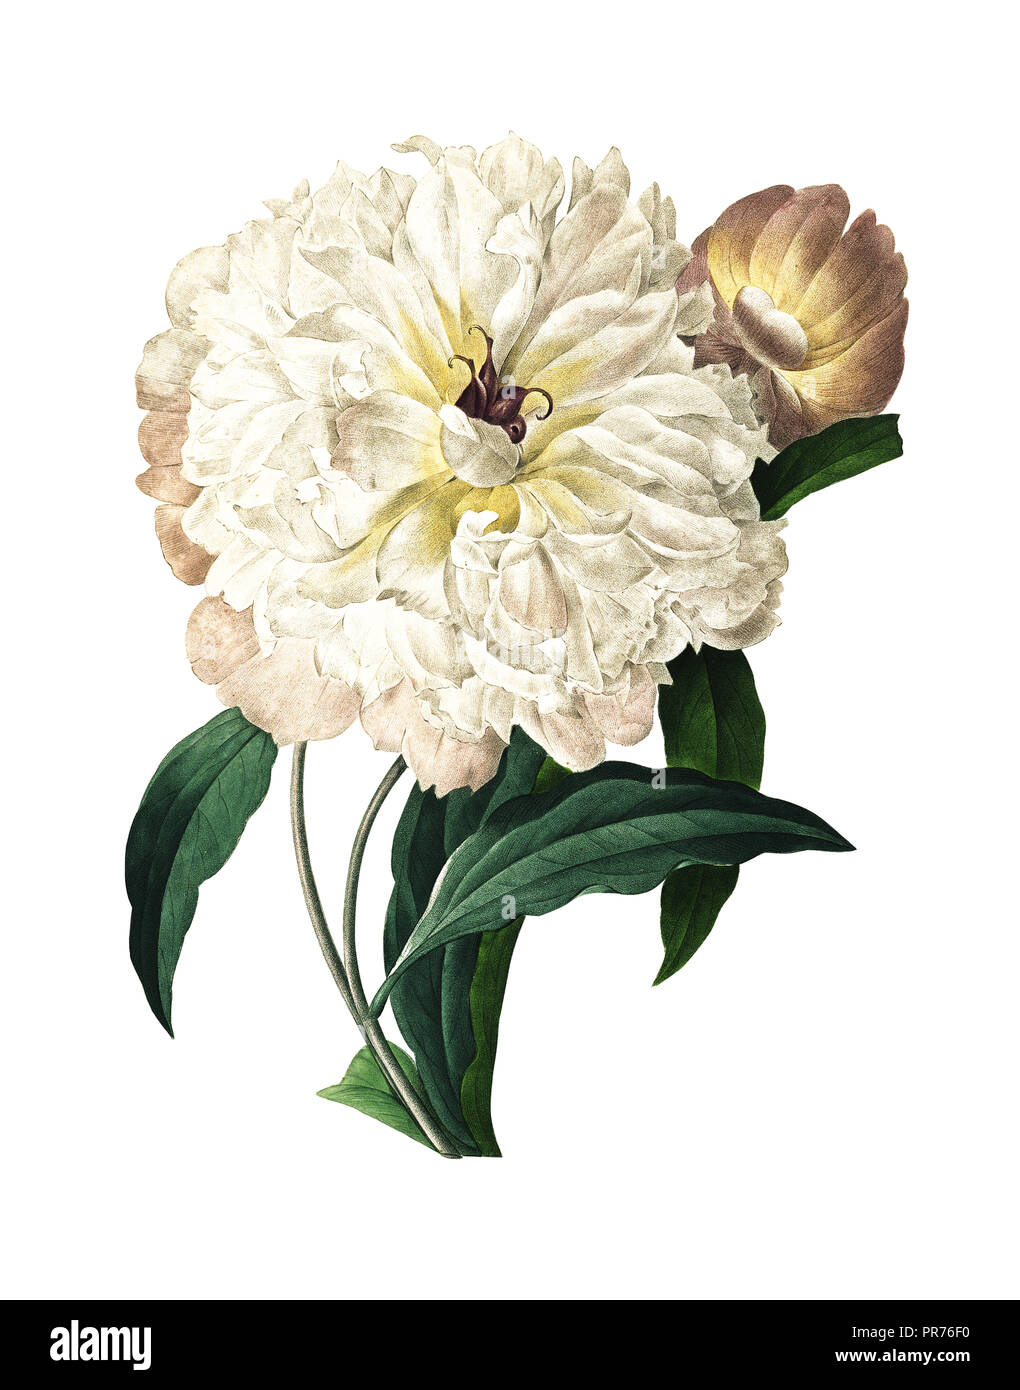 19ème siècle Illustration d'une pivoine blanche. Gravure par Pierre-Joseph Redoute. Publié dans Choix des Plus Belles fleurs, Paris (1827). Banque D'Images